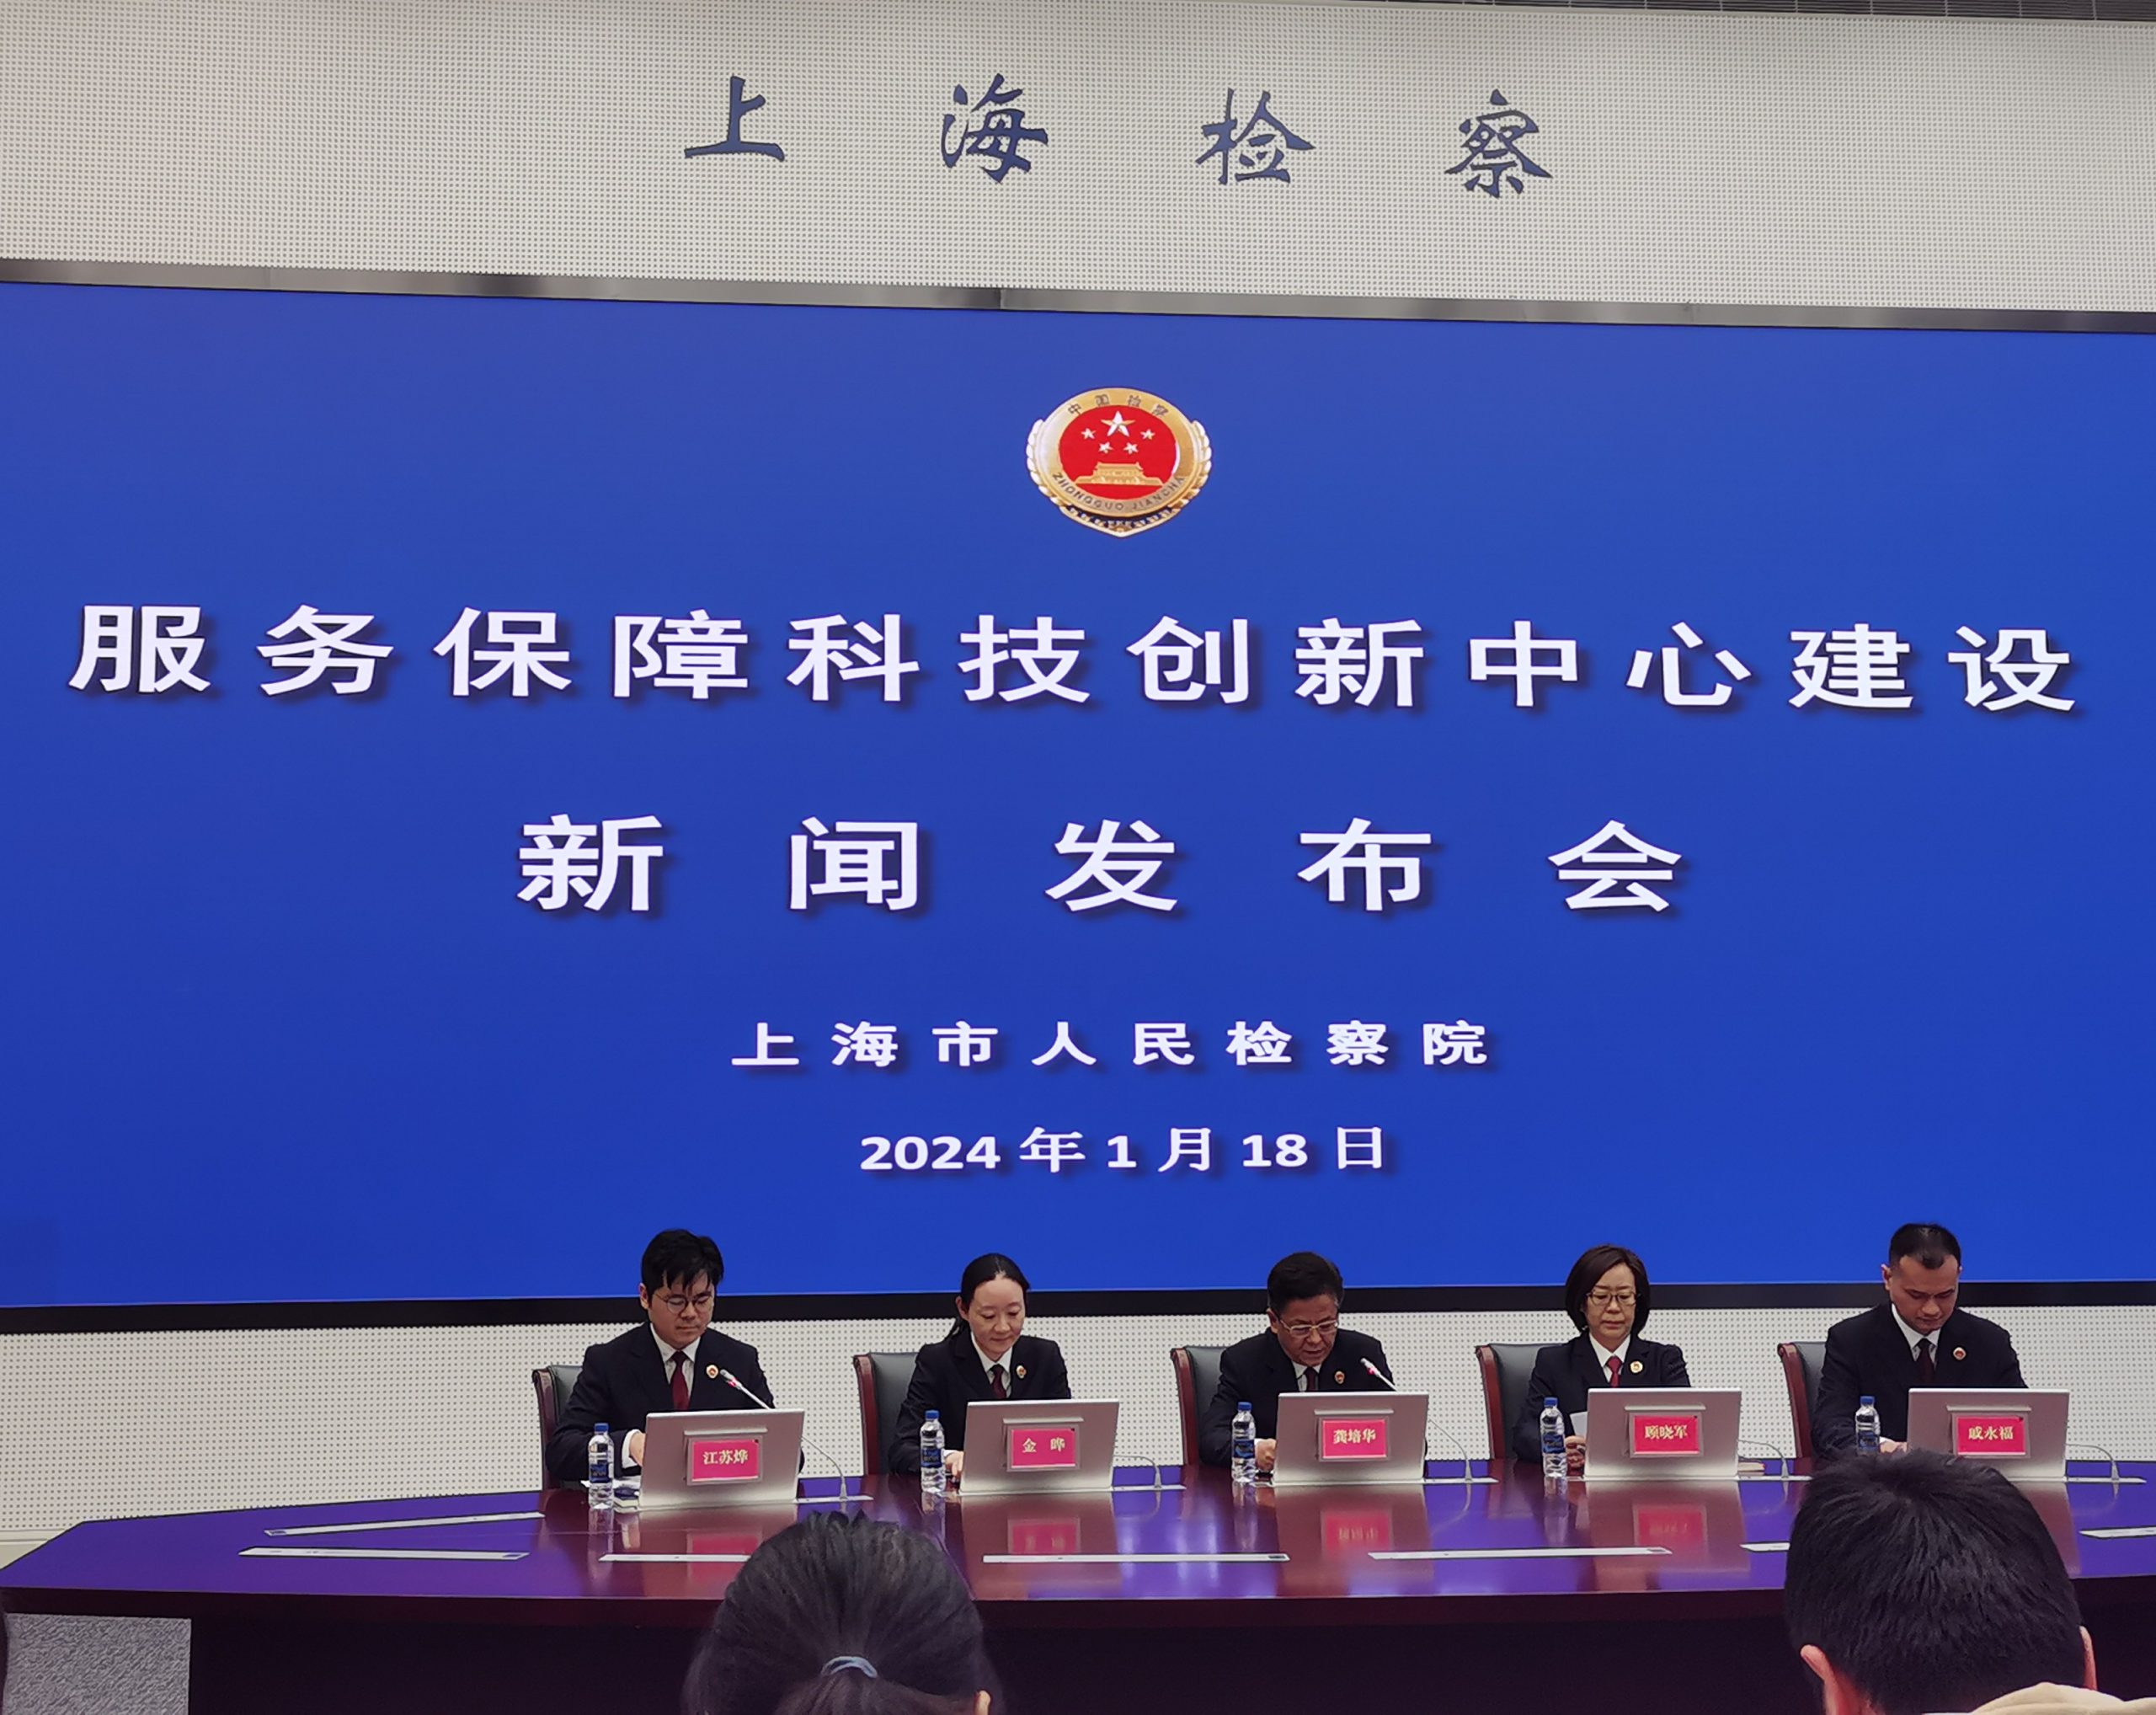 上海市人民检察院出台20条意见 全面加强科技创新中心建设服务保障工作-公闻财经